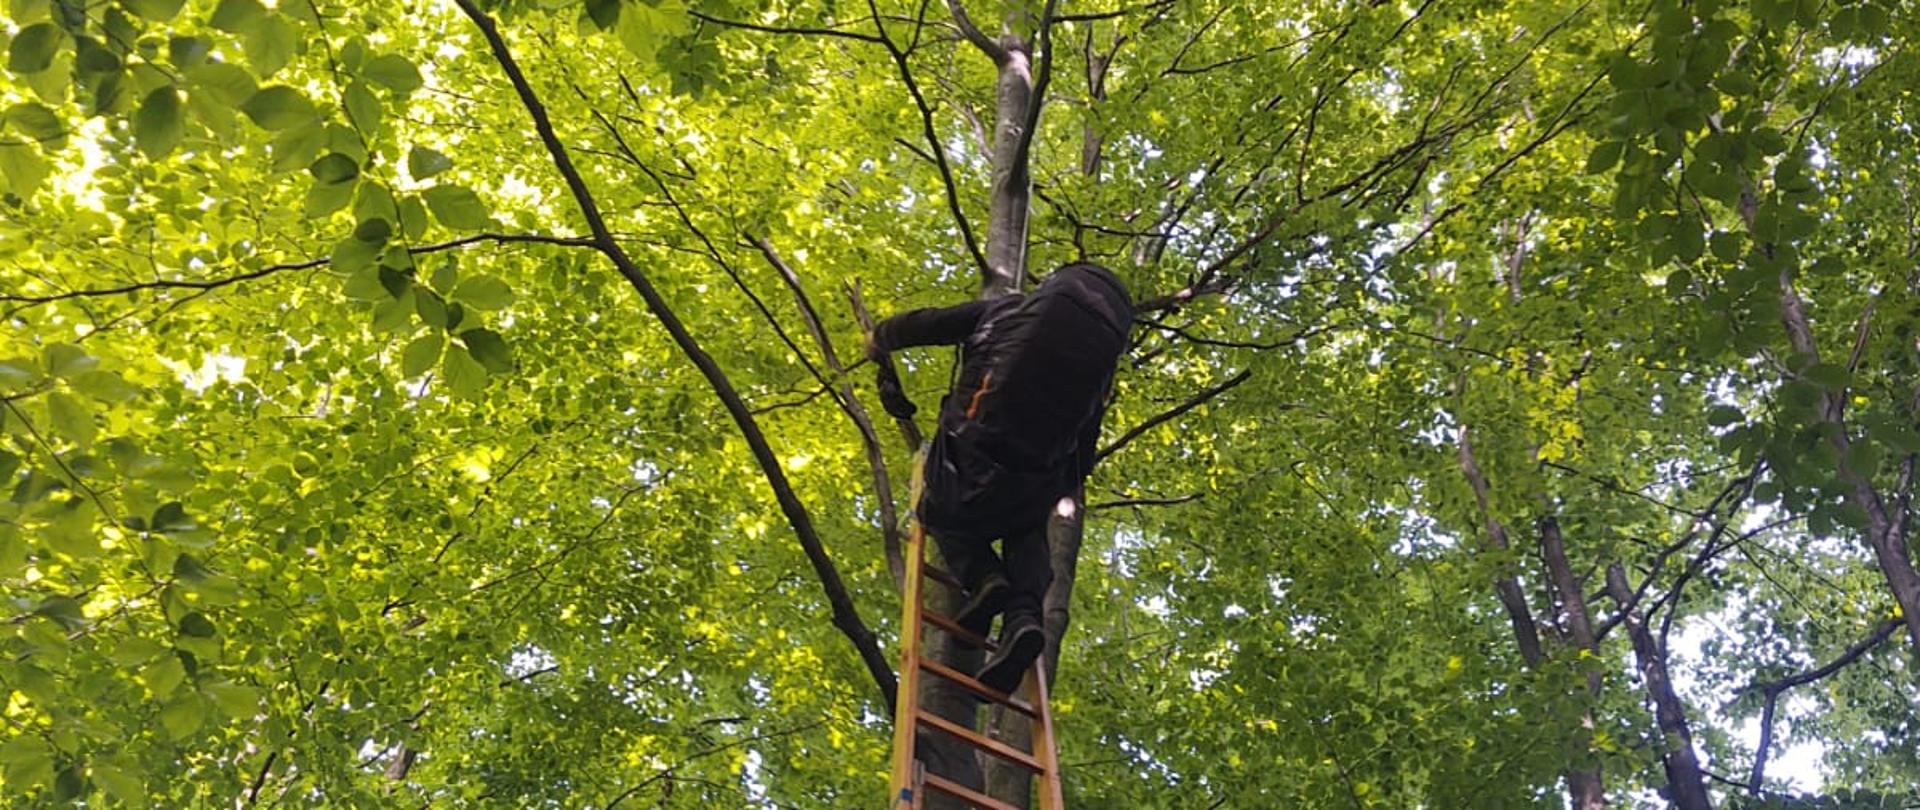 Osoba ratowana i ratownik na drabinie przy drzewie.